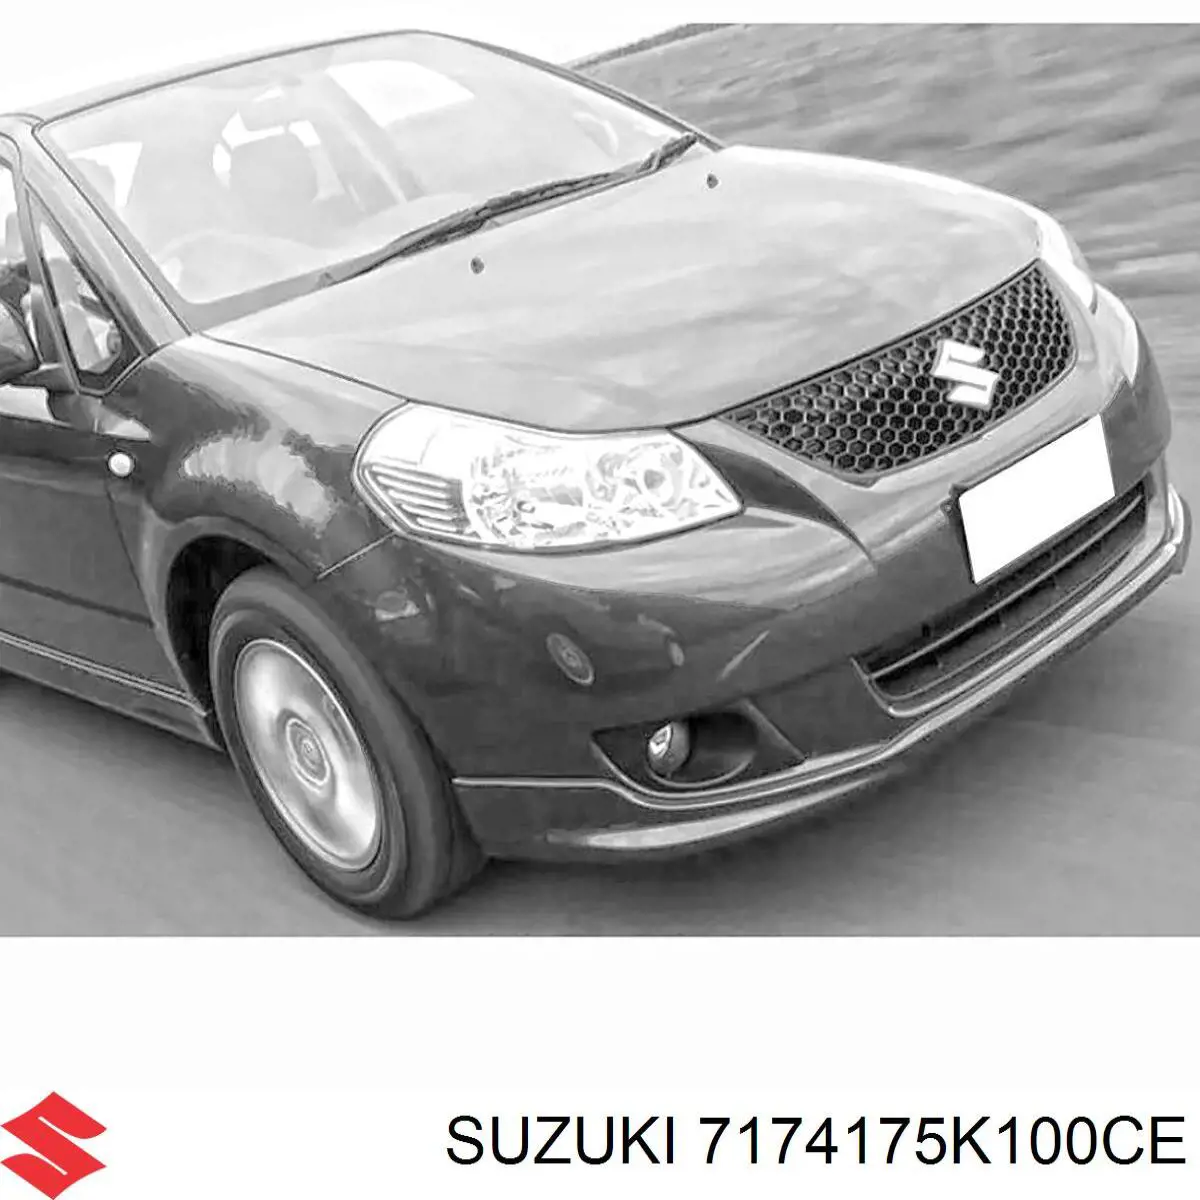 7174175K100CE Suzuki parrilla